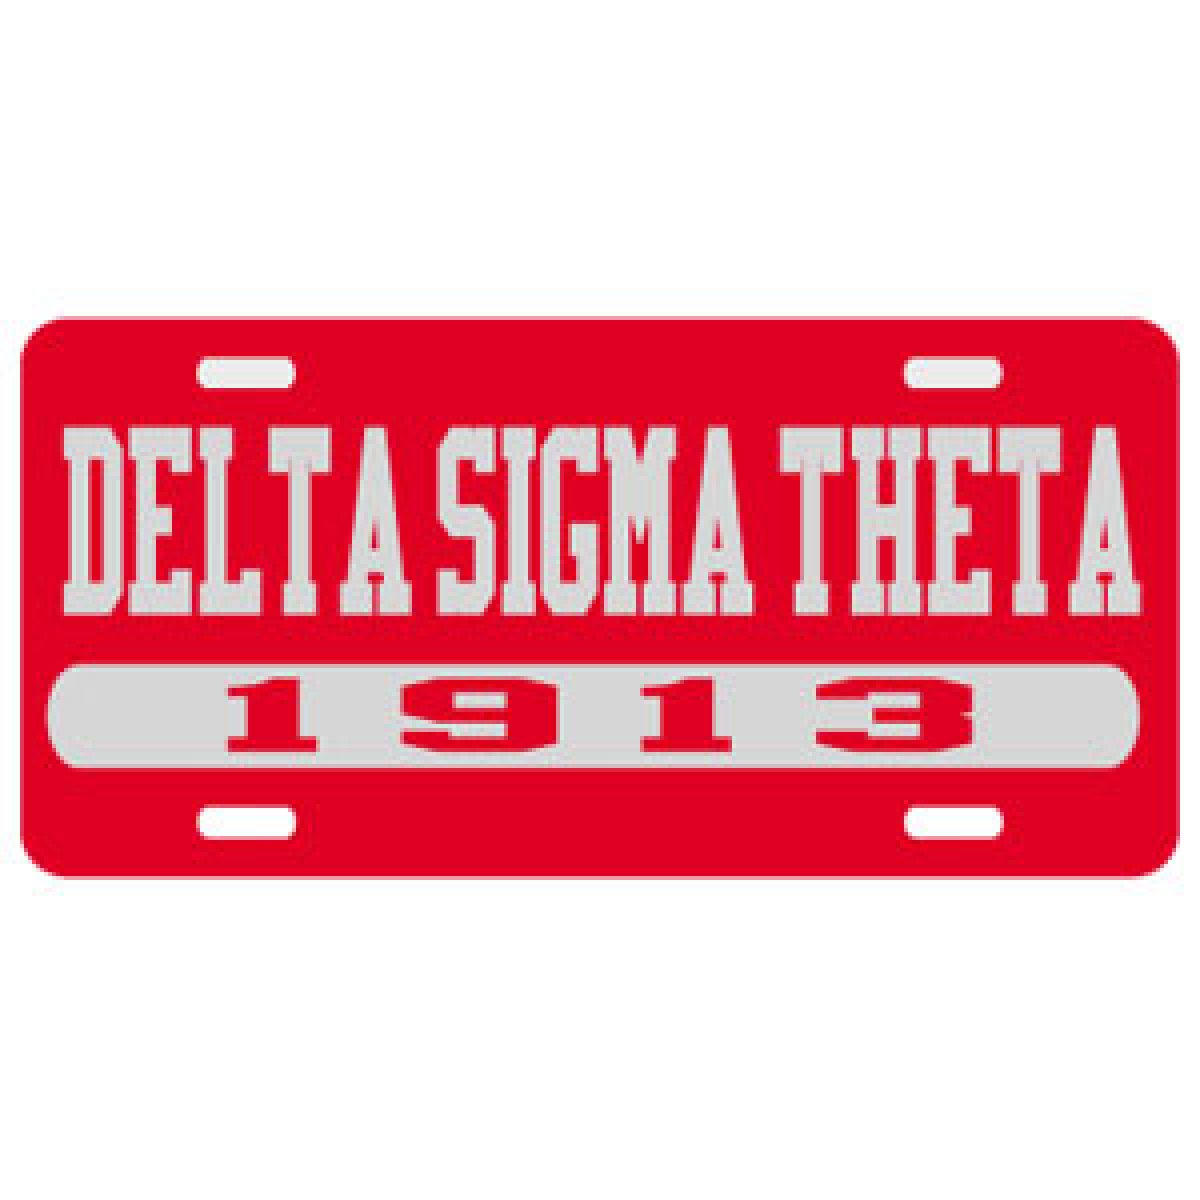 Delta Sigma Theta 1913 License Plate